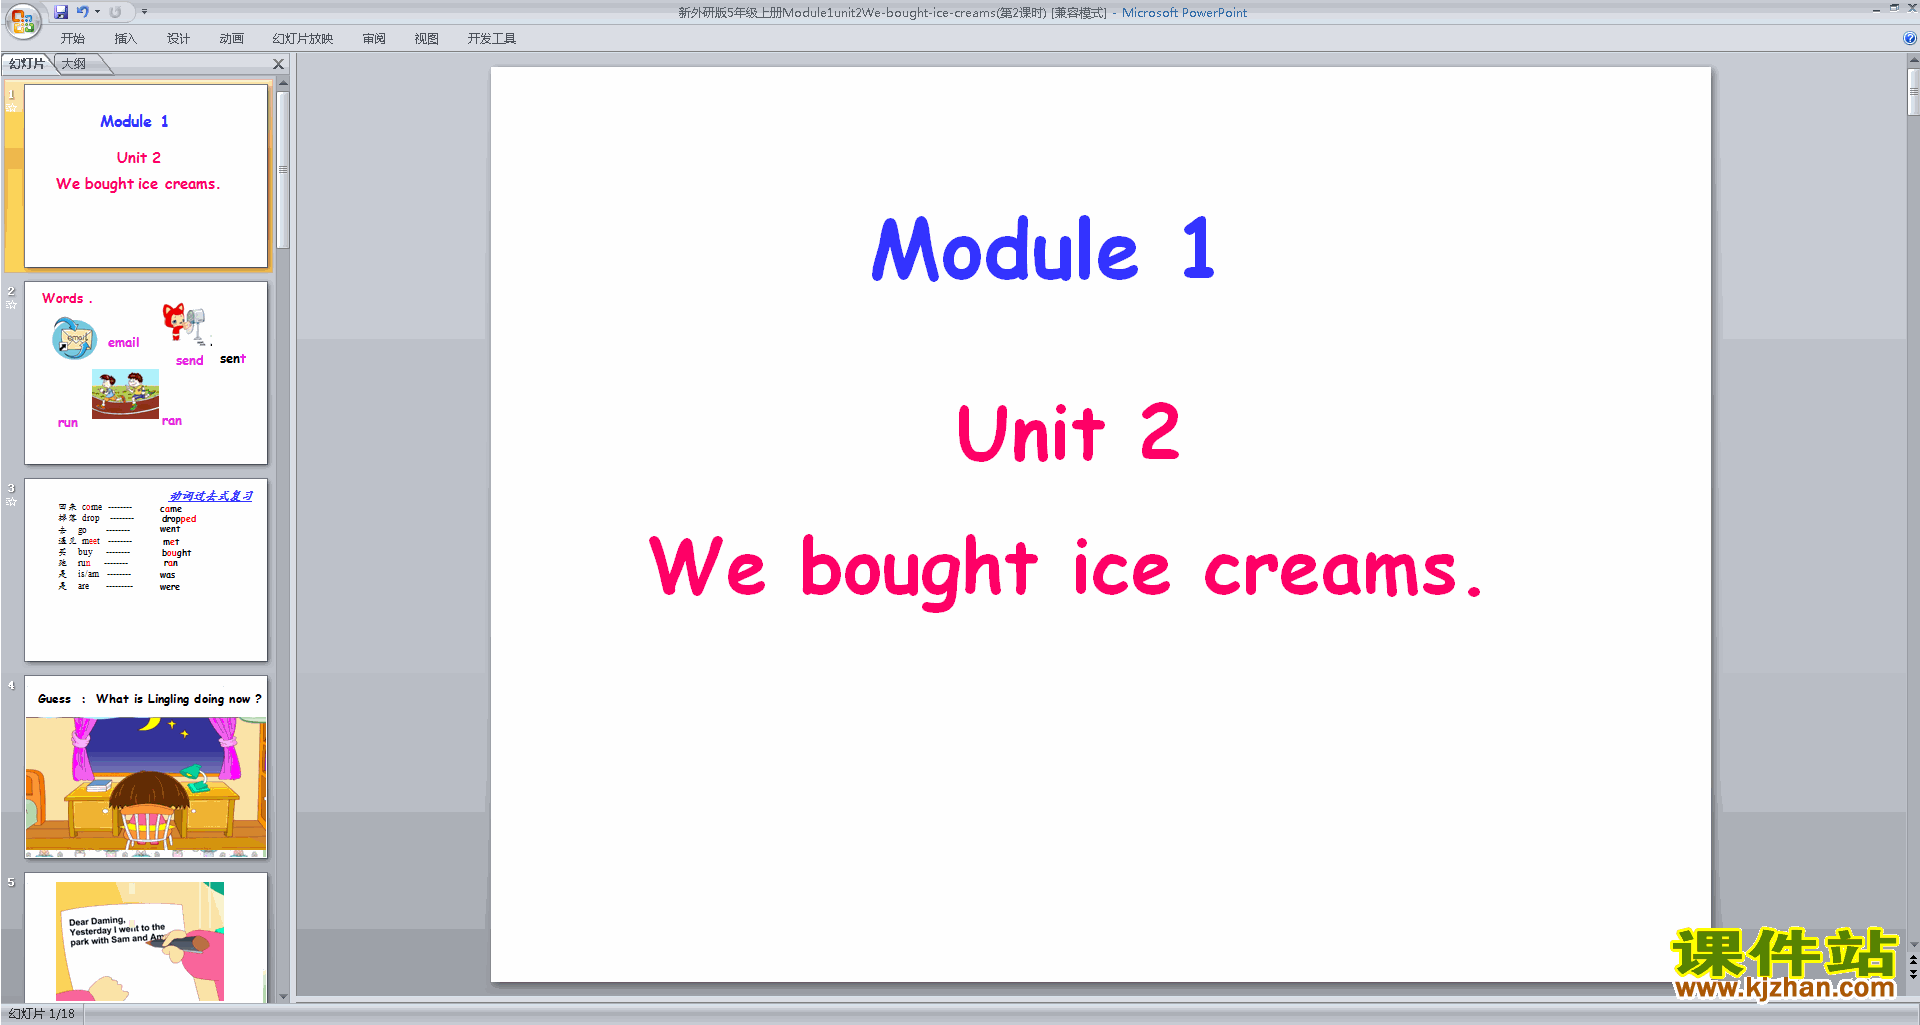 عModule1 Unit2 We bought ice creamspptμ2